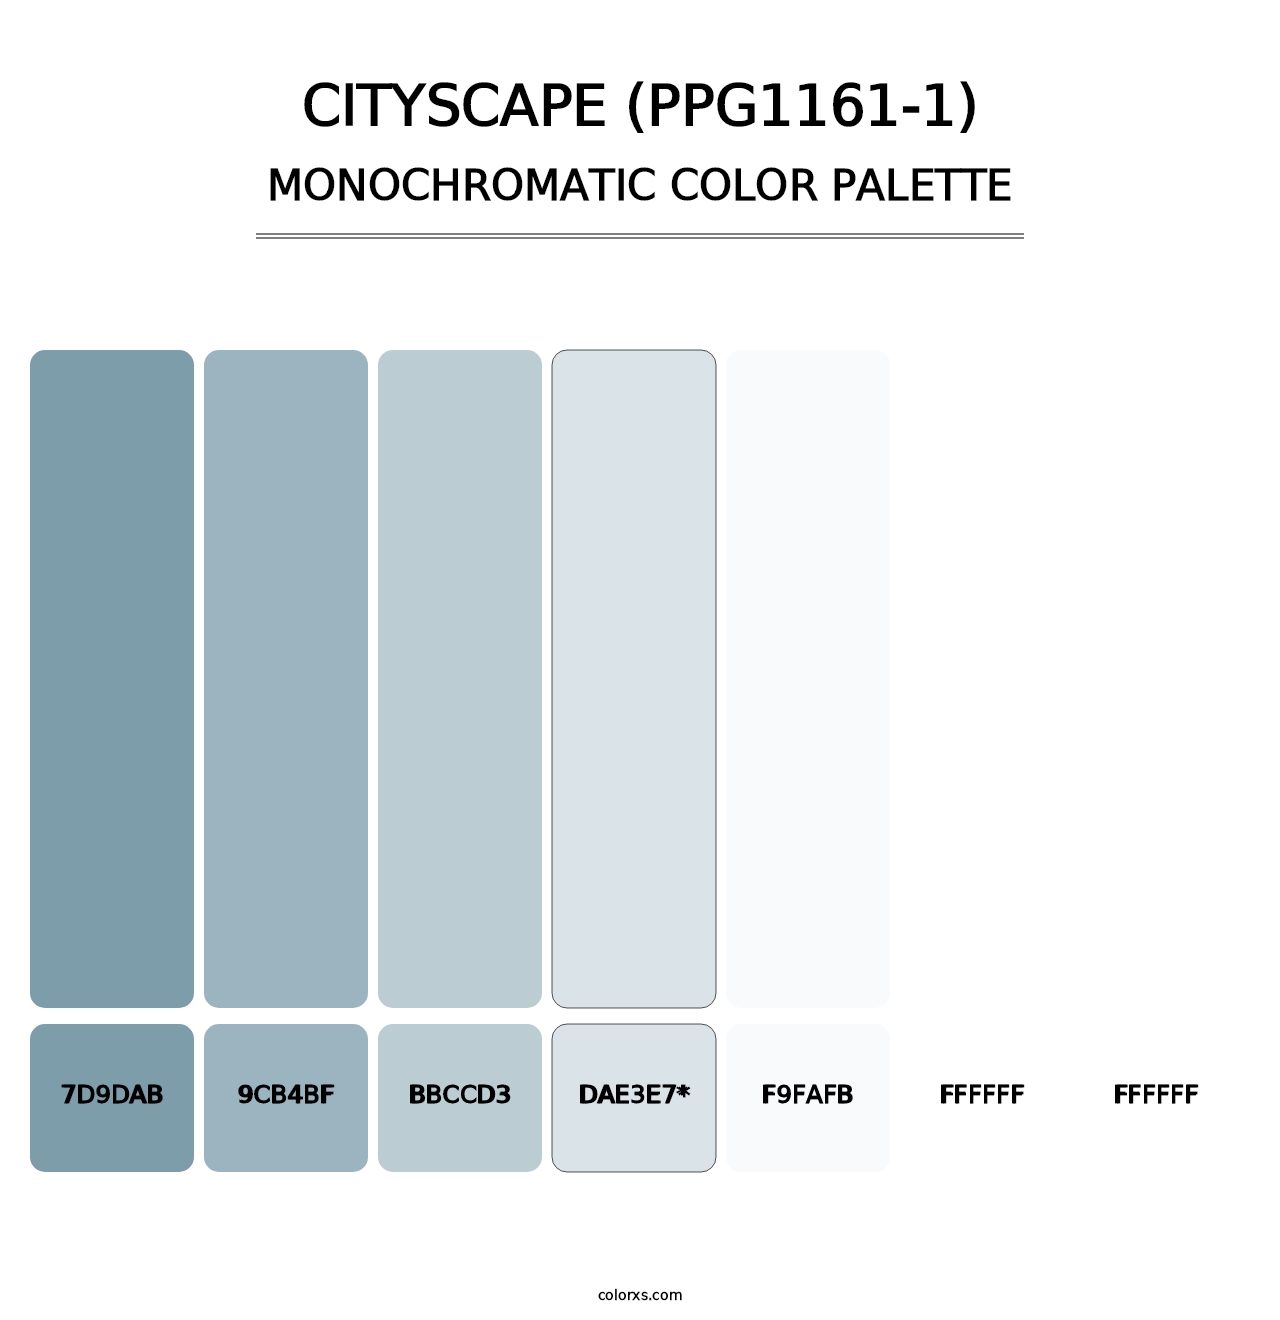 Cityscape (PPG1161-1) - Monochromatic Color Palette